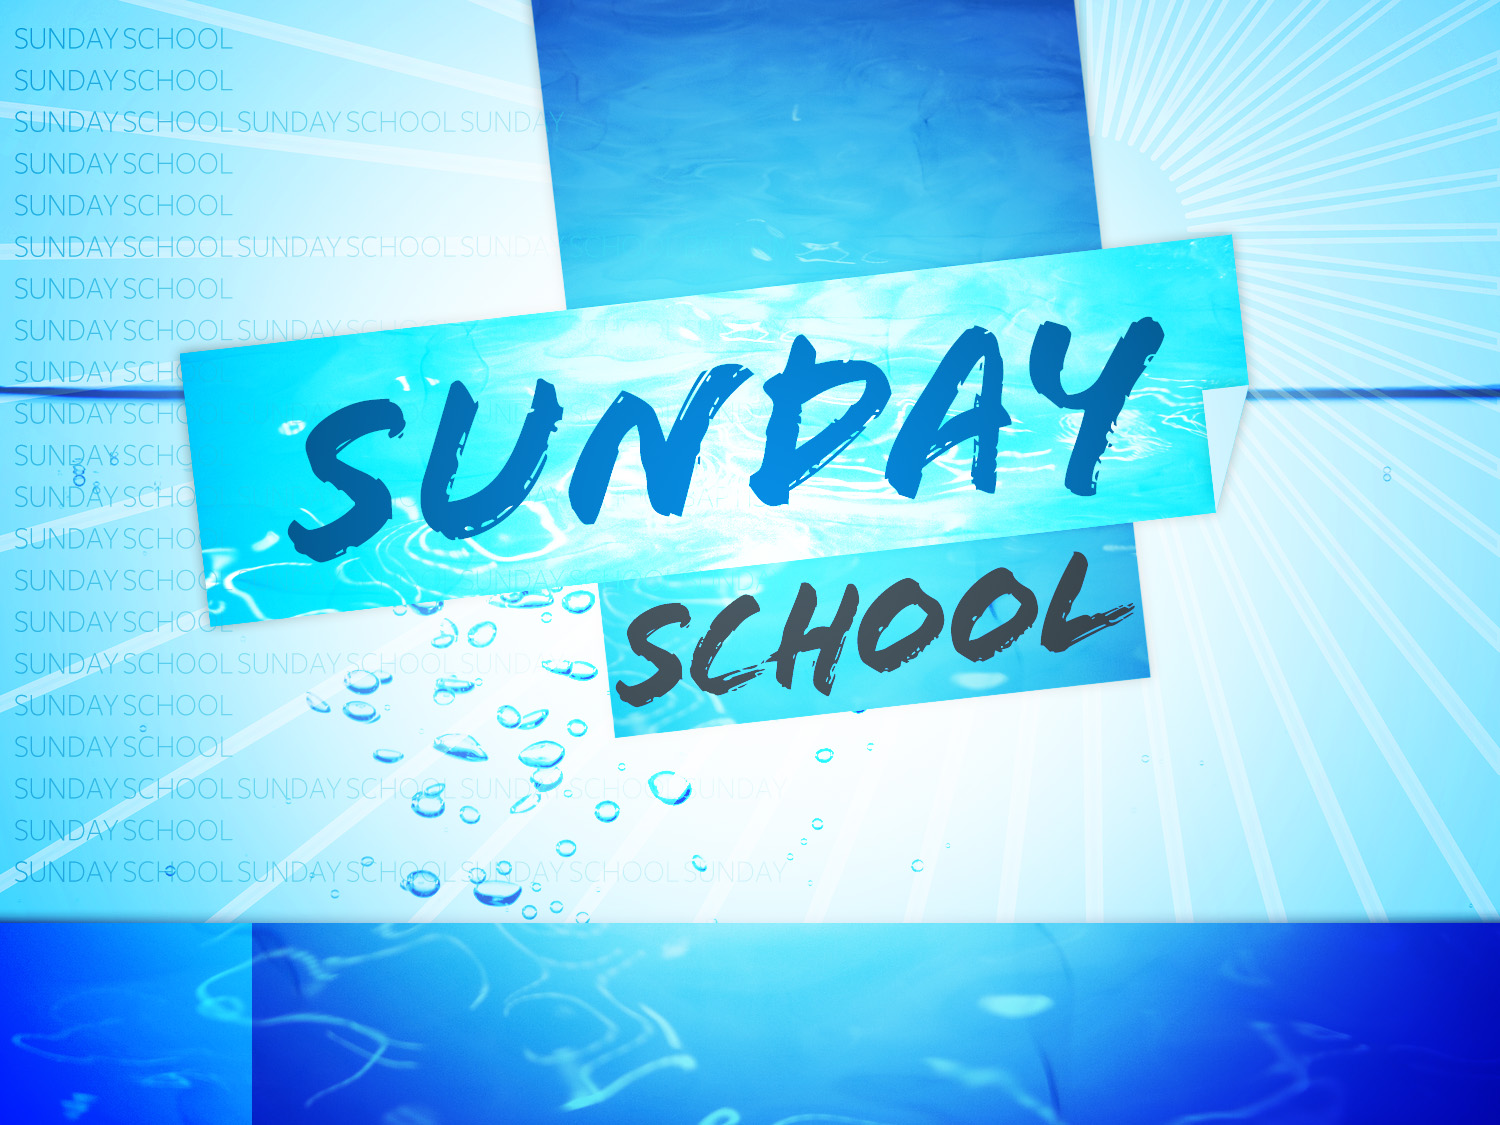 Sunday School Background Image